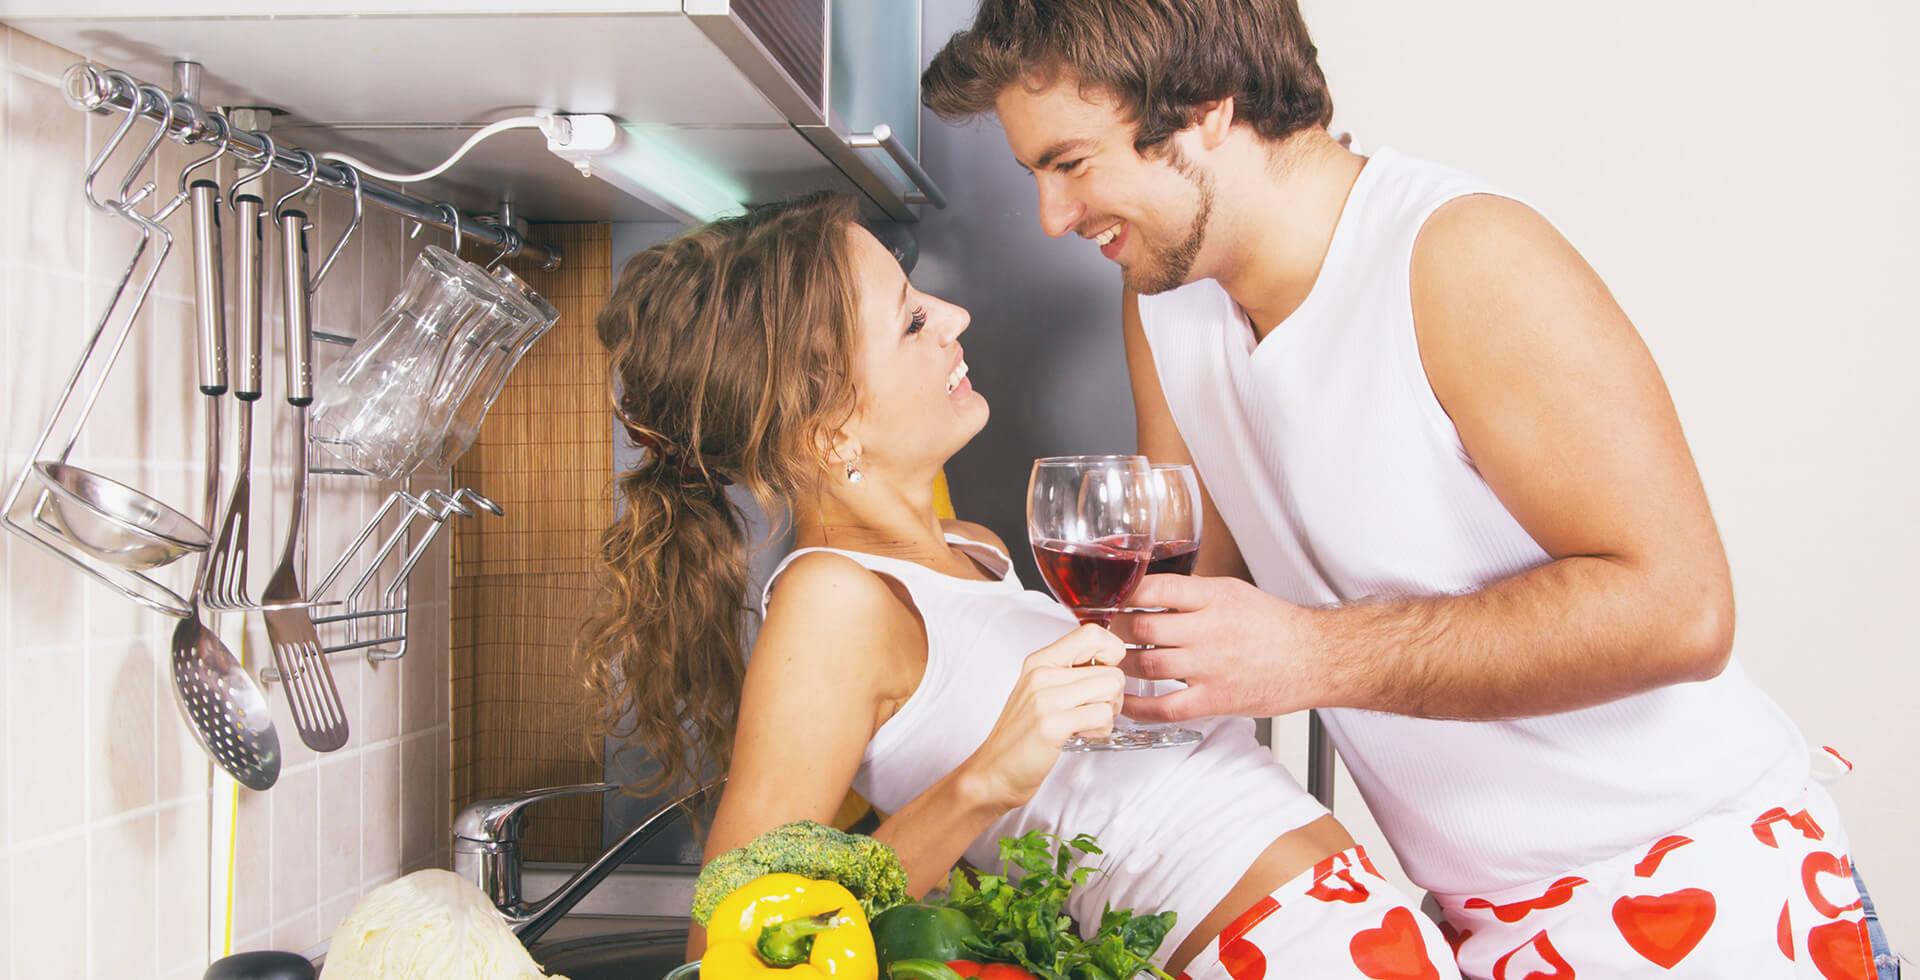 Мужчина и женщина на кухне